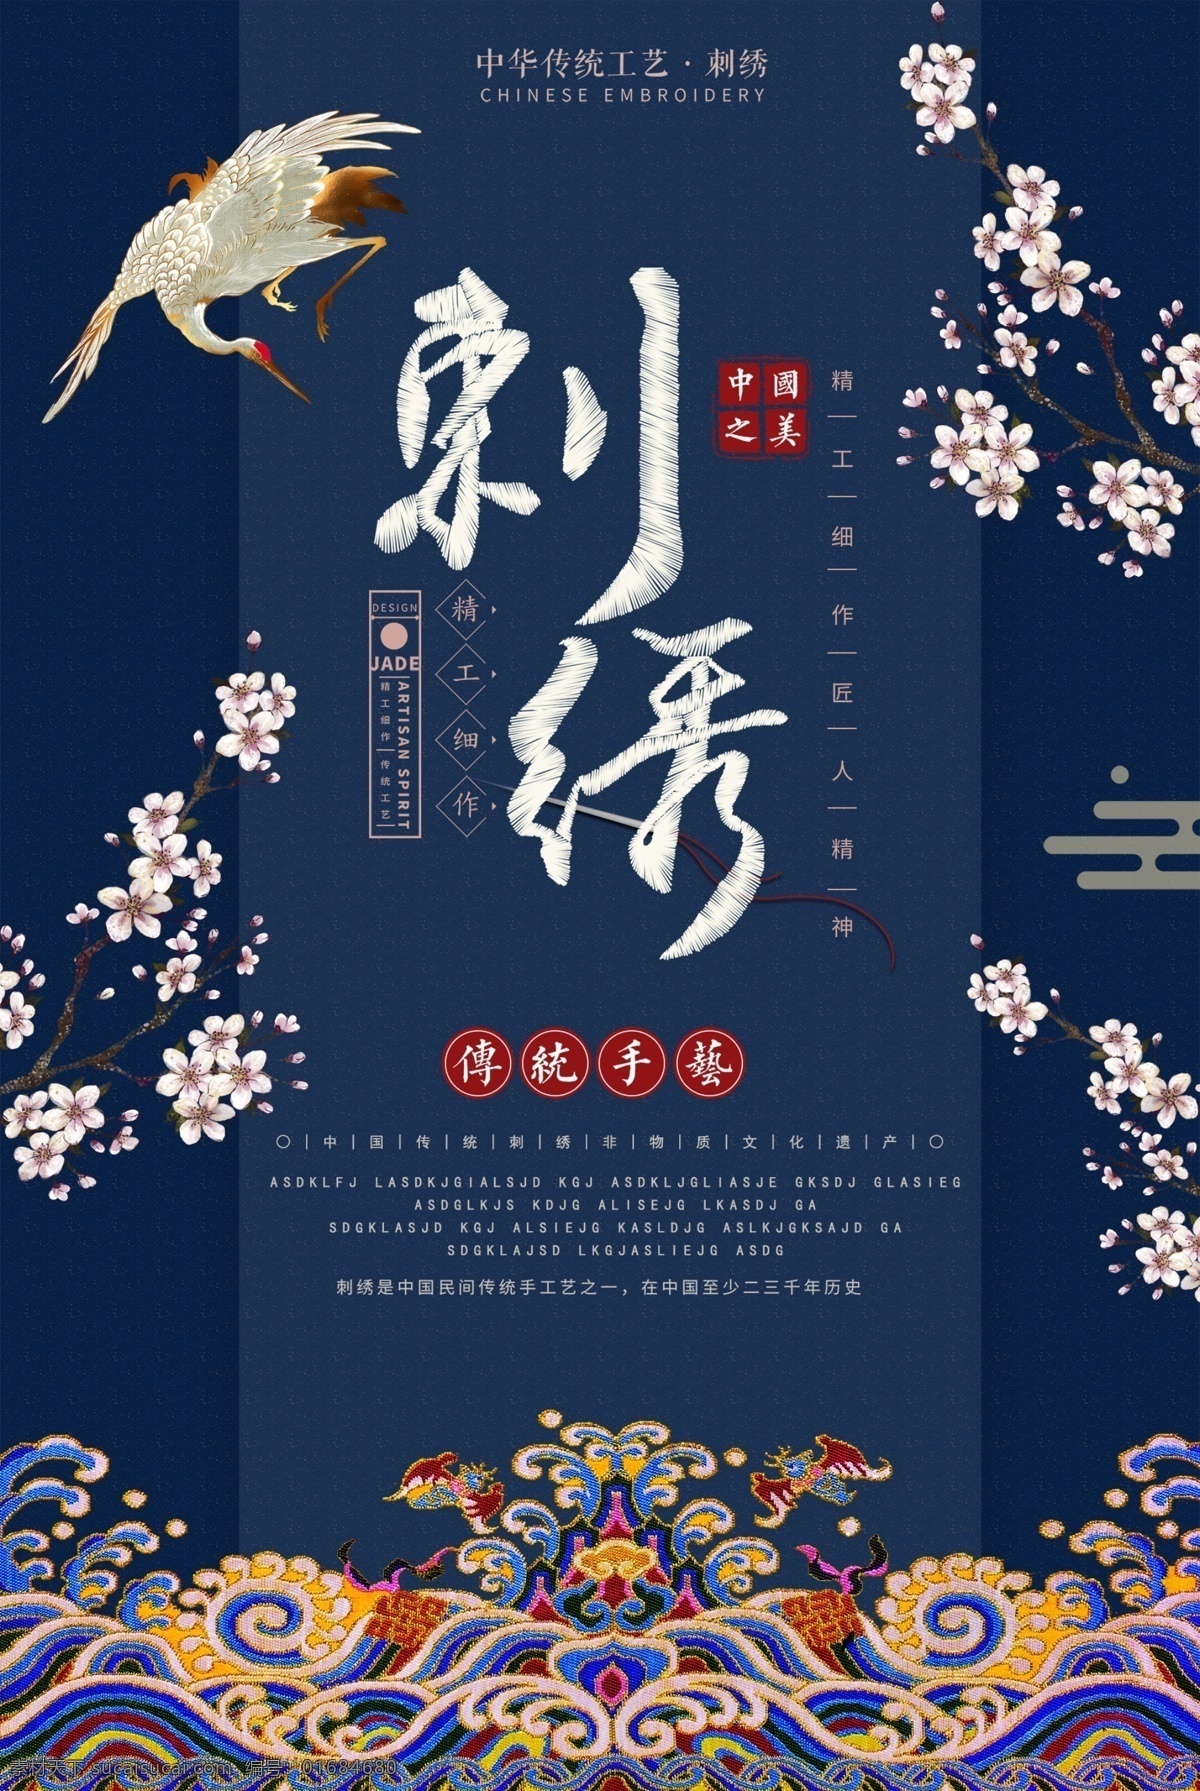 刺绣 传统 手艺 非物质文化 遗产 传统手艺 中华 中国之美